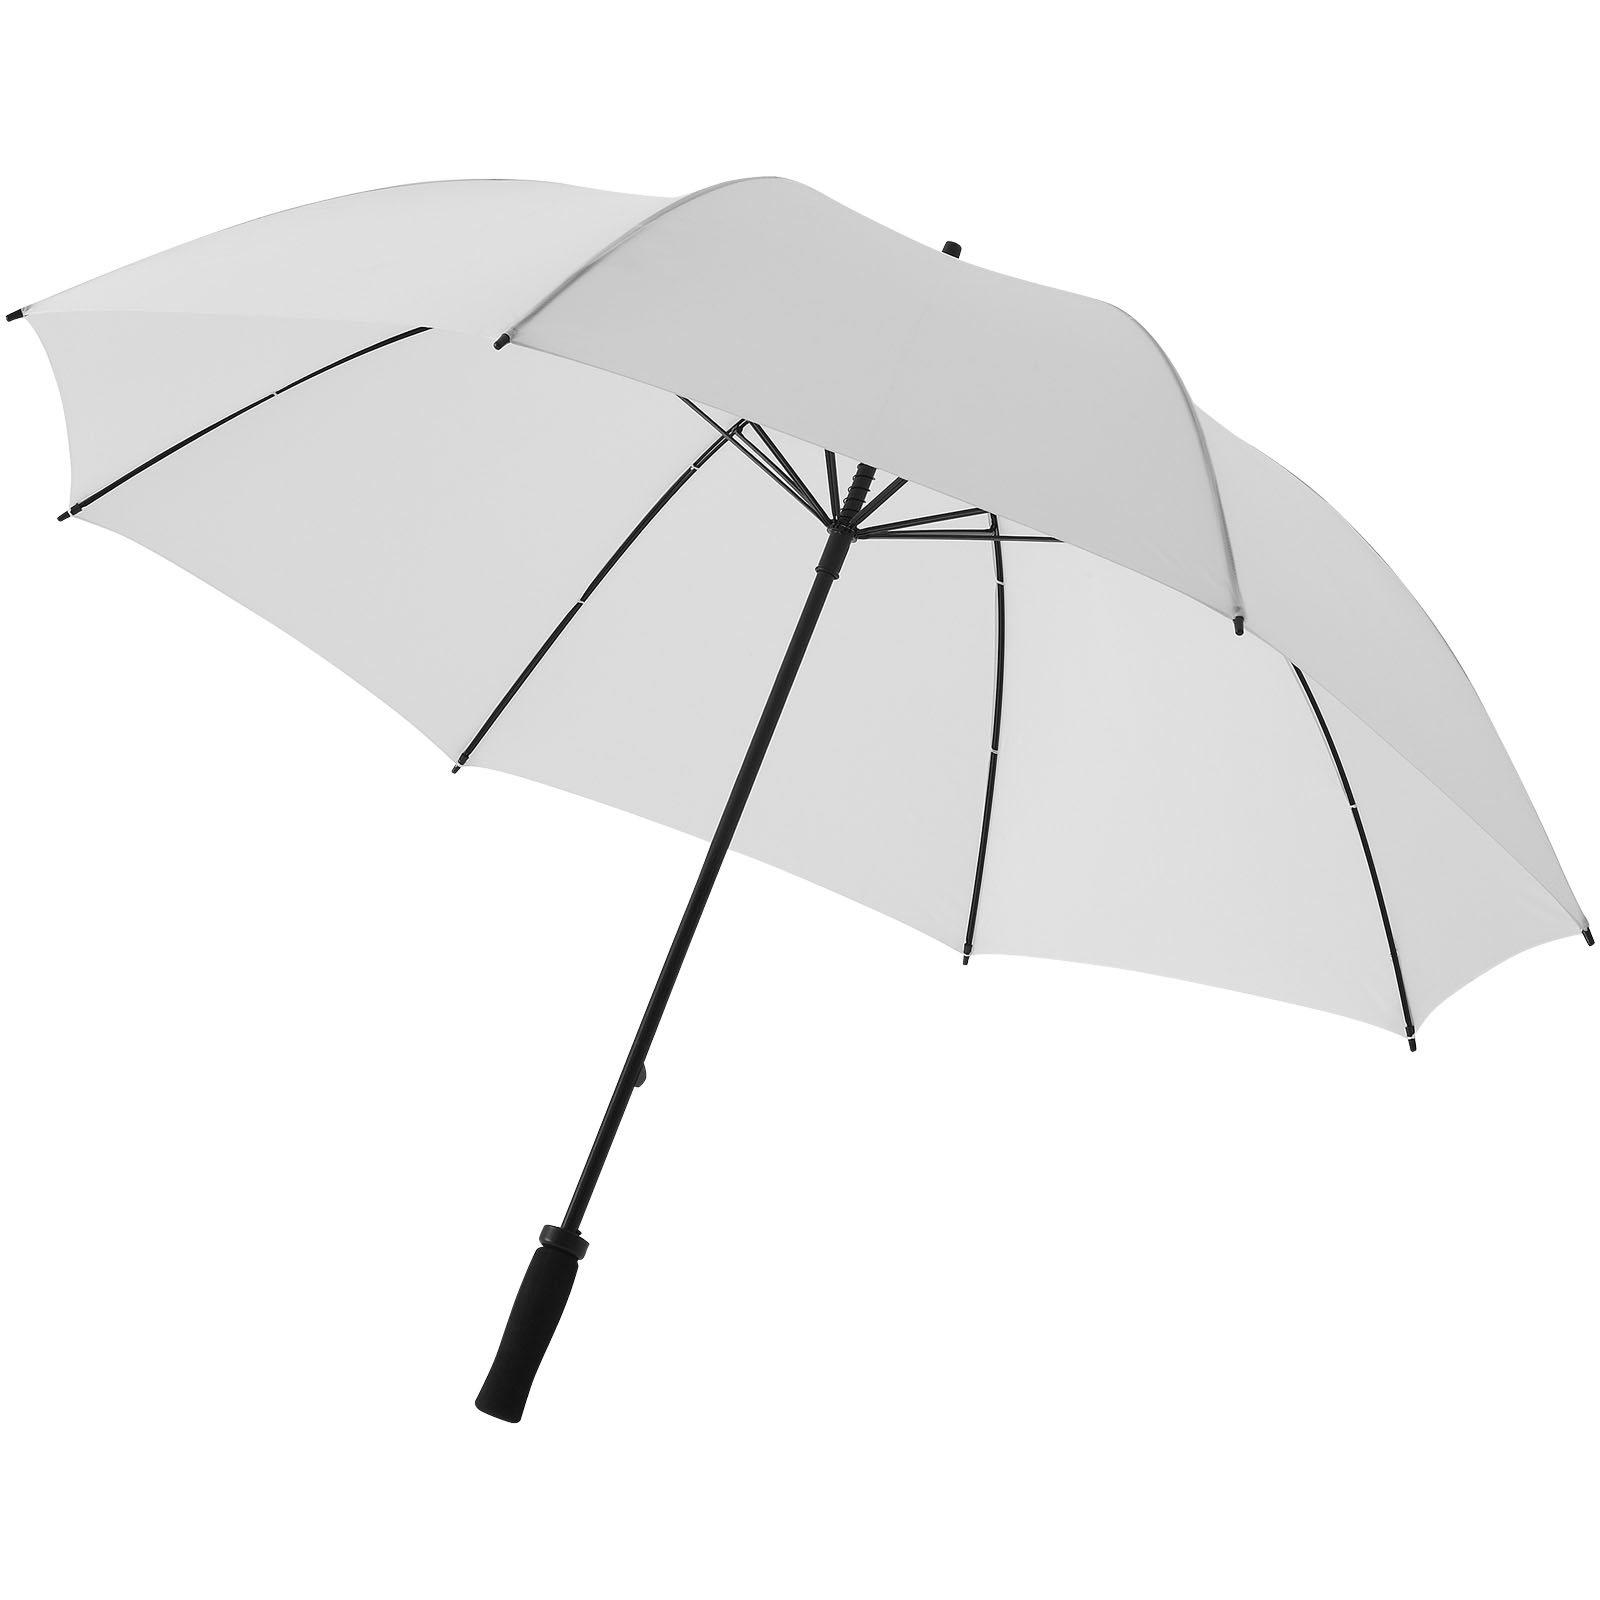 30" Yfke Zwei-Personen Regenschirm - Maintal 